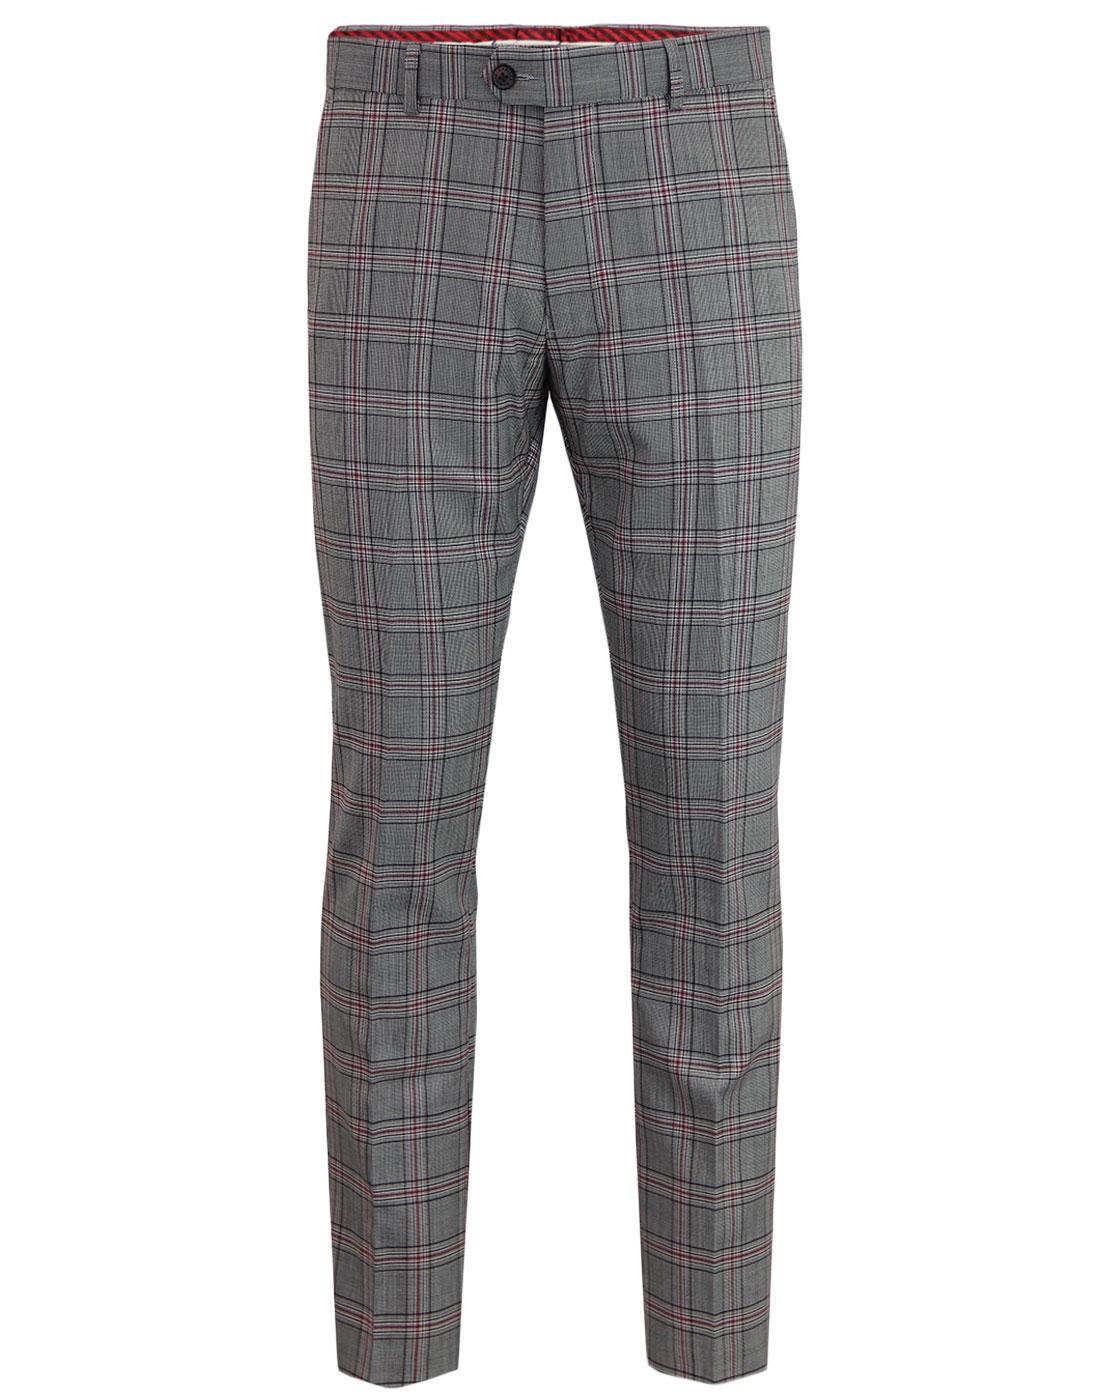 Aspen GABICCI VINTAGE Mod POW Check Suit Trousers